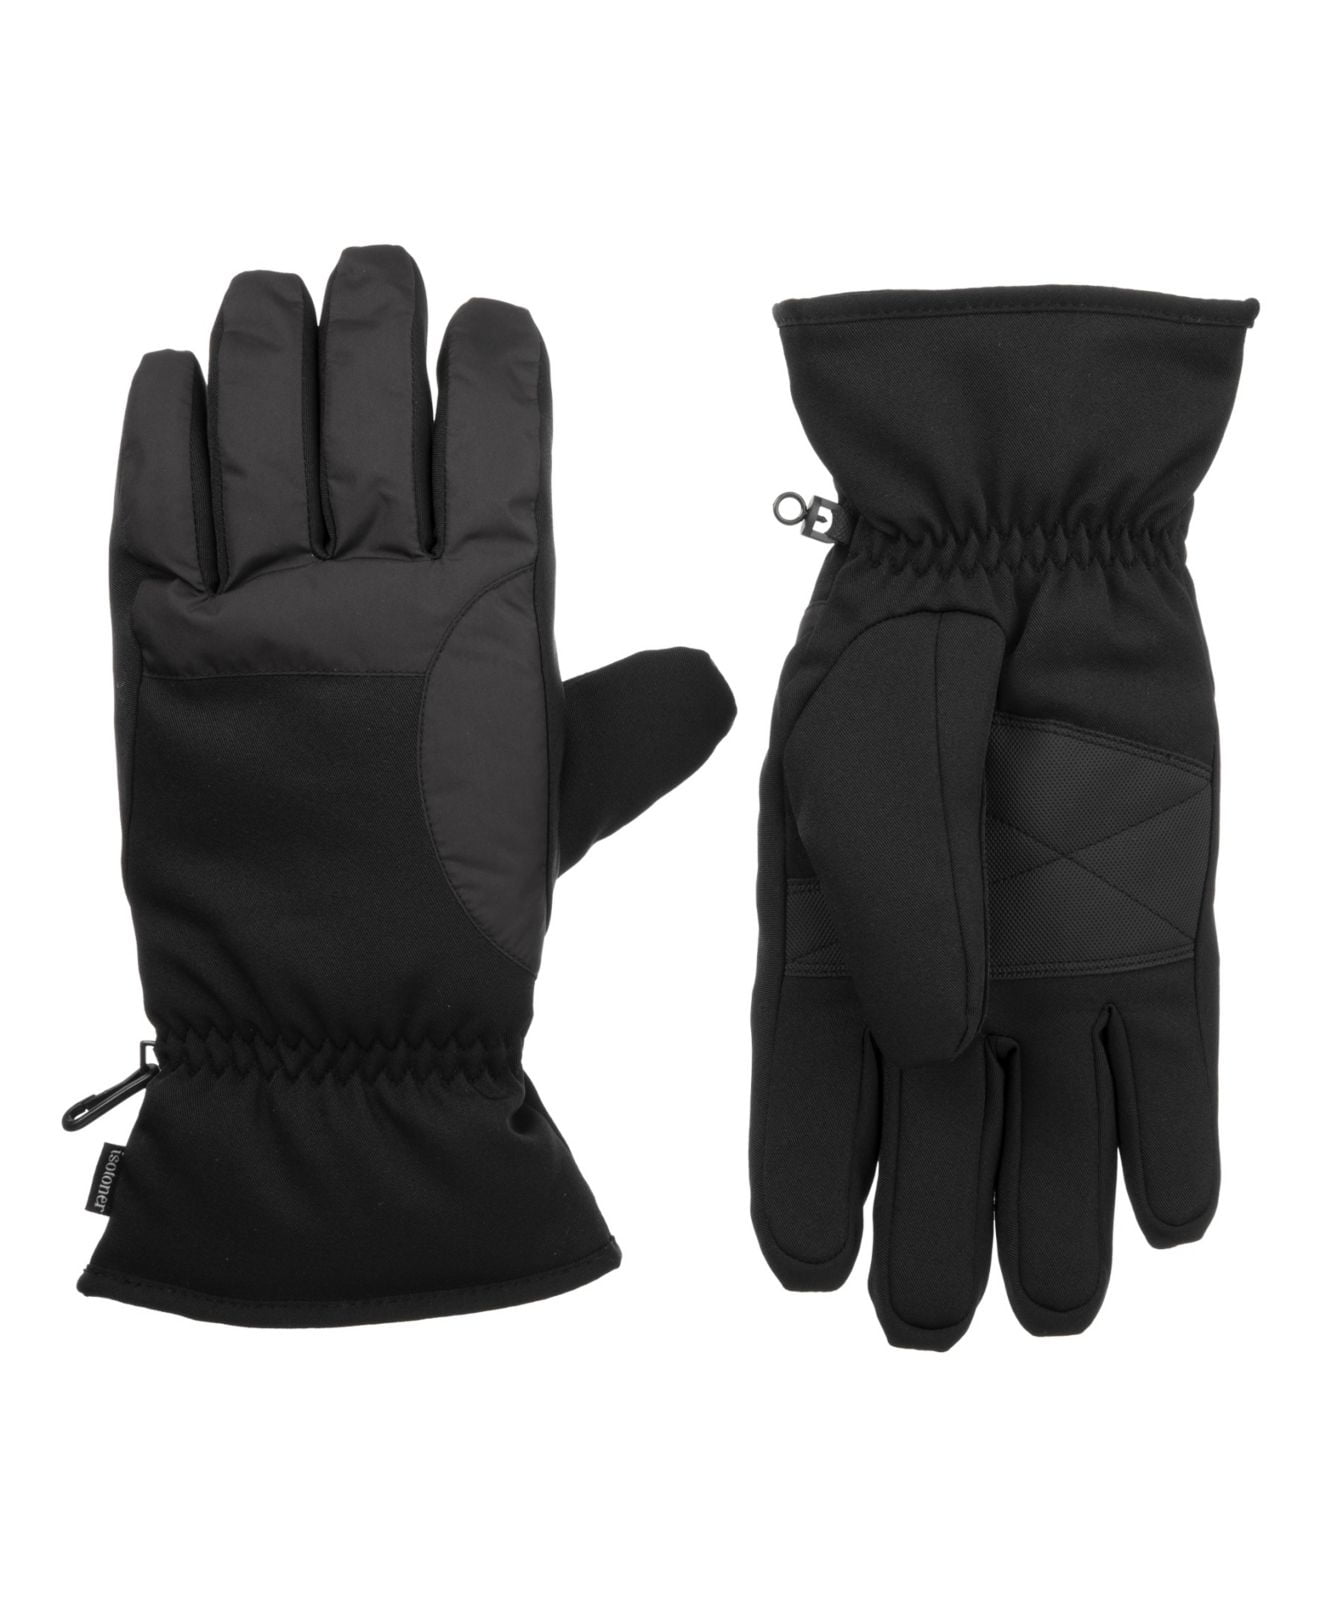 Isotoner Men's Winter Gloves Medium Ski Lined Touch Screen Black M ...